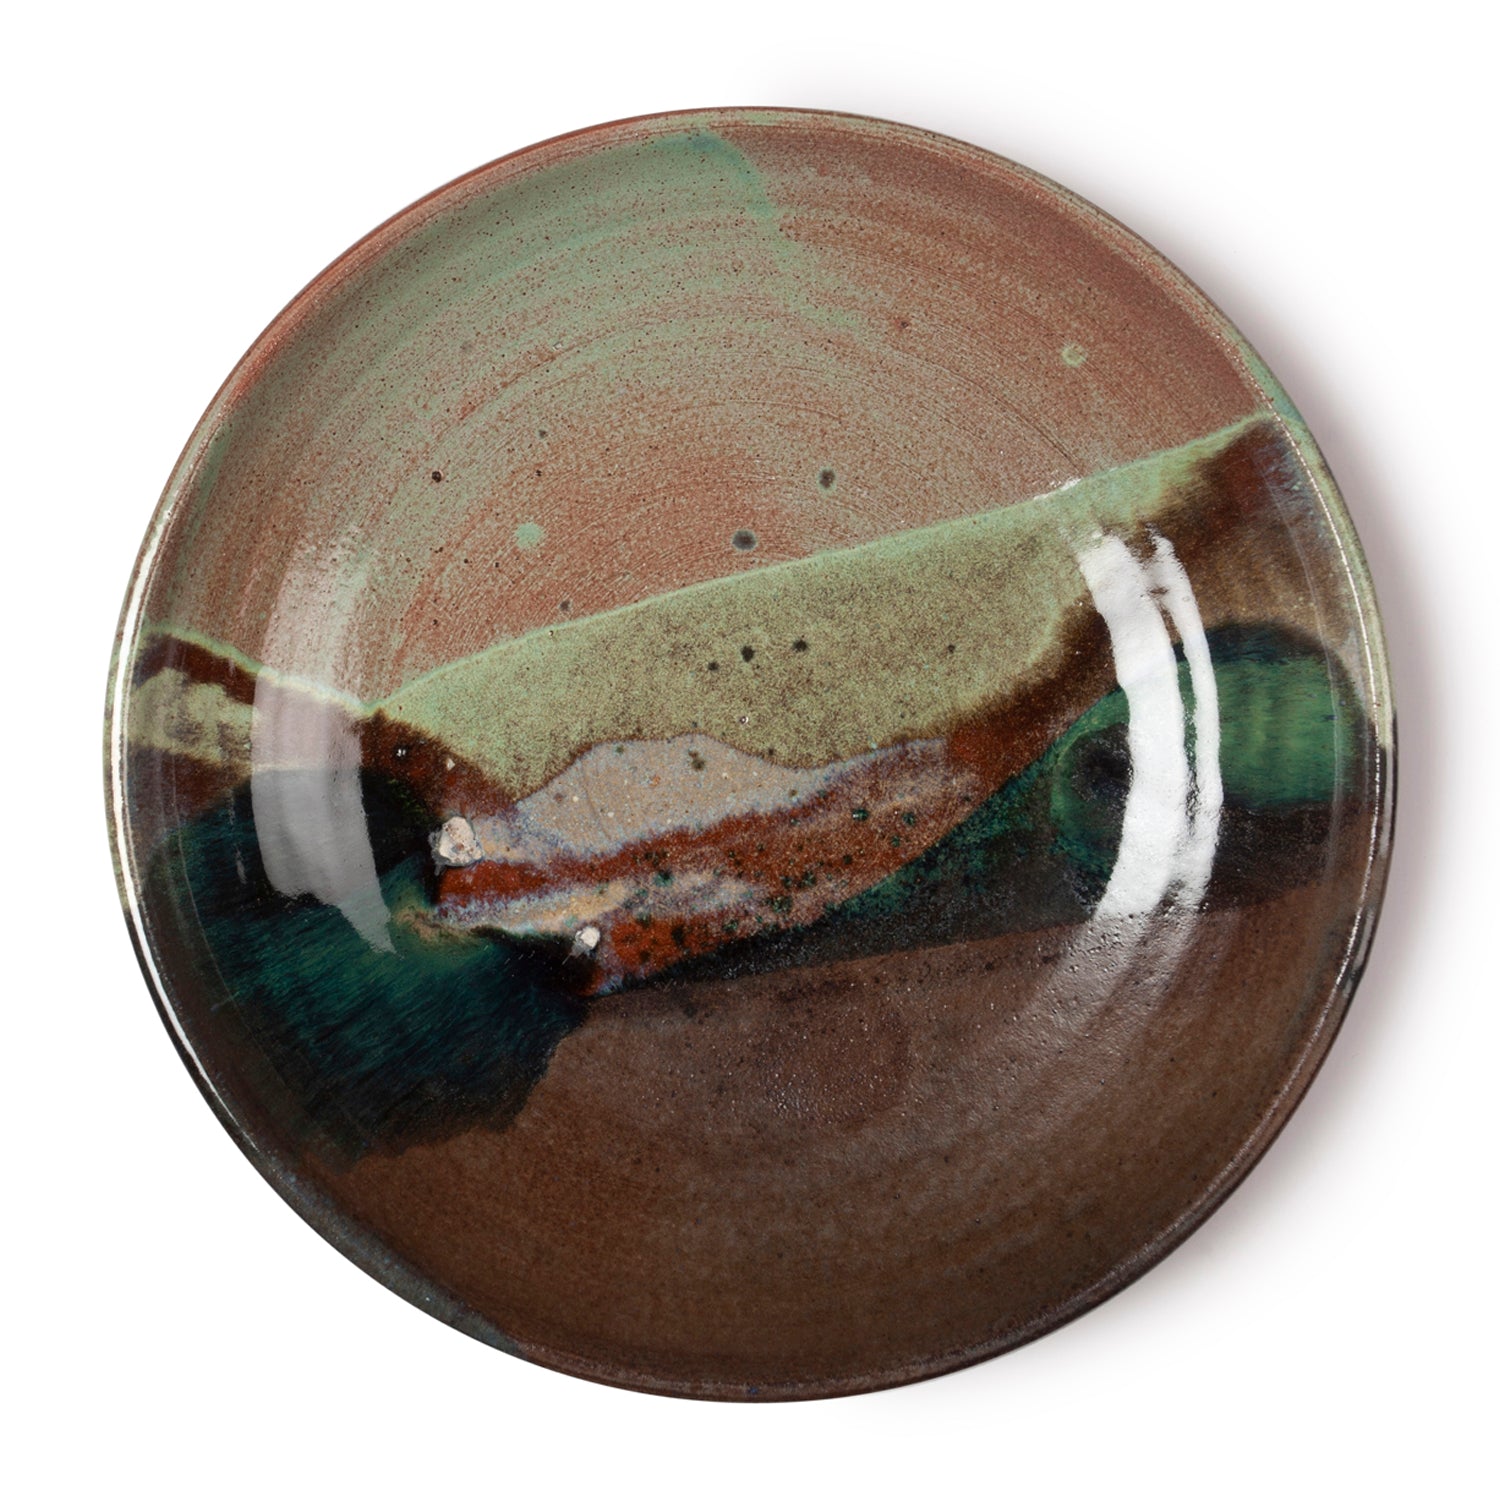 Glazed Terracotta Bowl